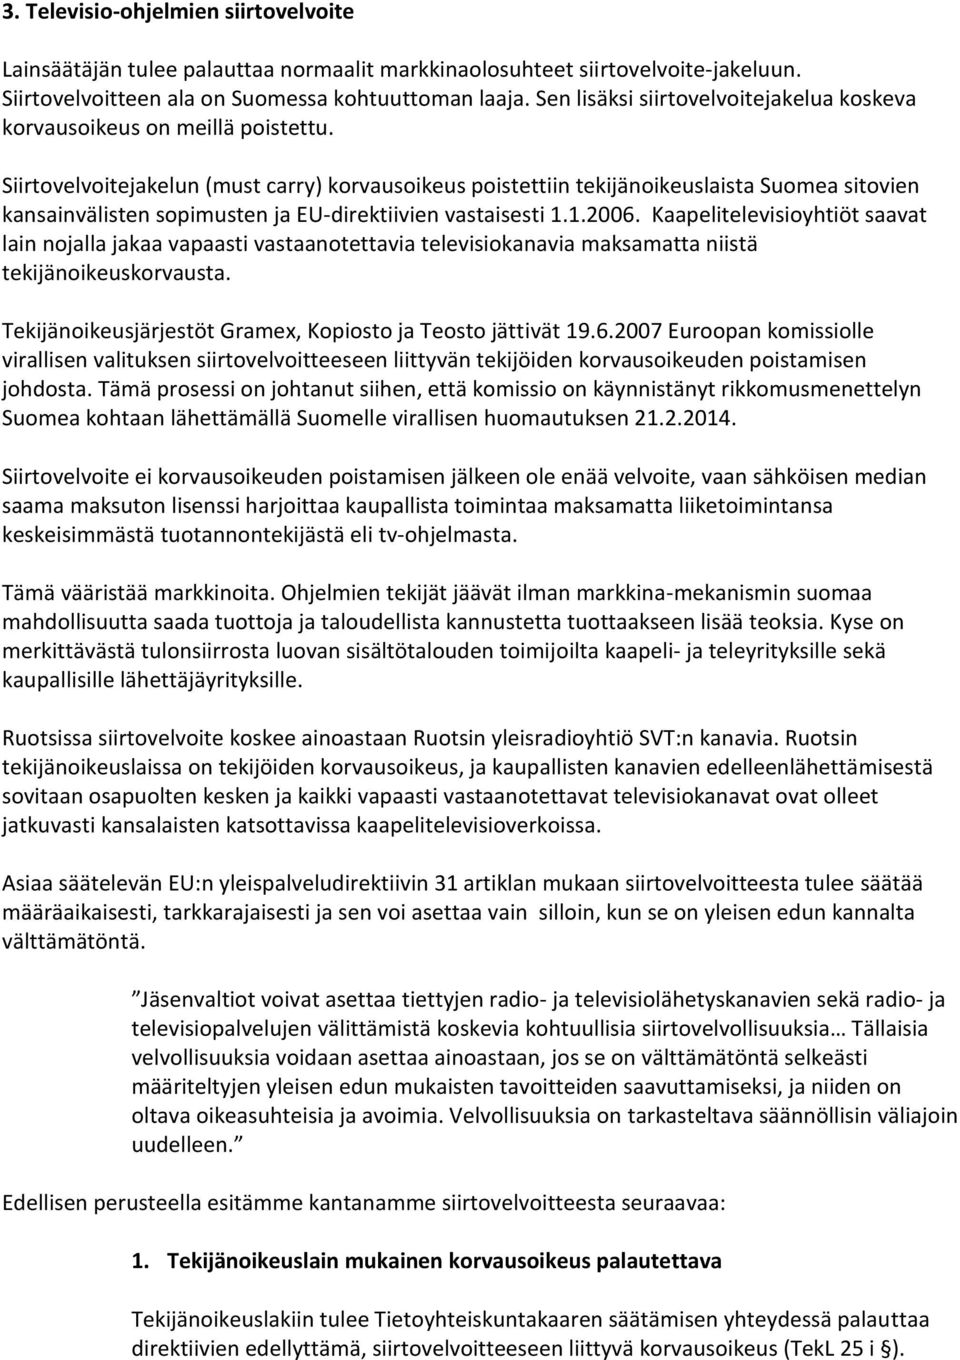 Siirtovelvoitejakelun (must carry) korvausoikeus poistettiin tekijänoikeuslaista Suomea sitovien kansainvälisten sopimusten ja EU-direktiivien vastaisesti 1.1.2006.